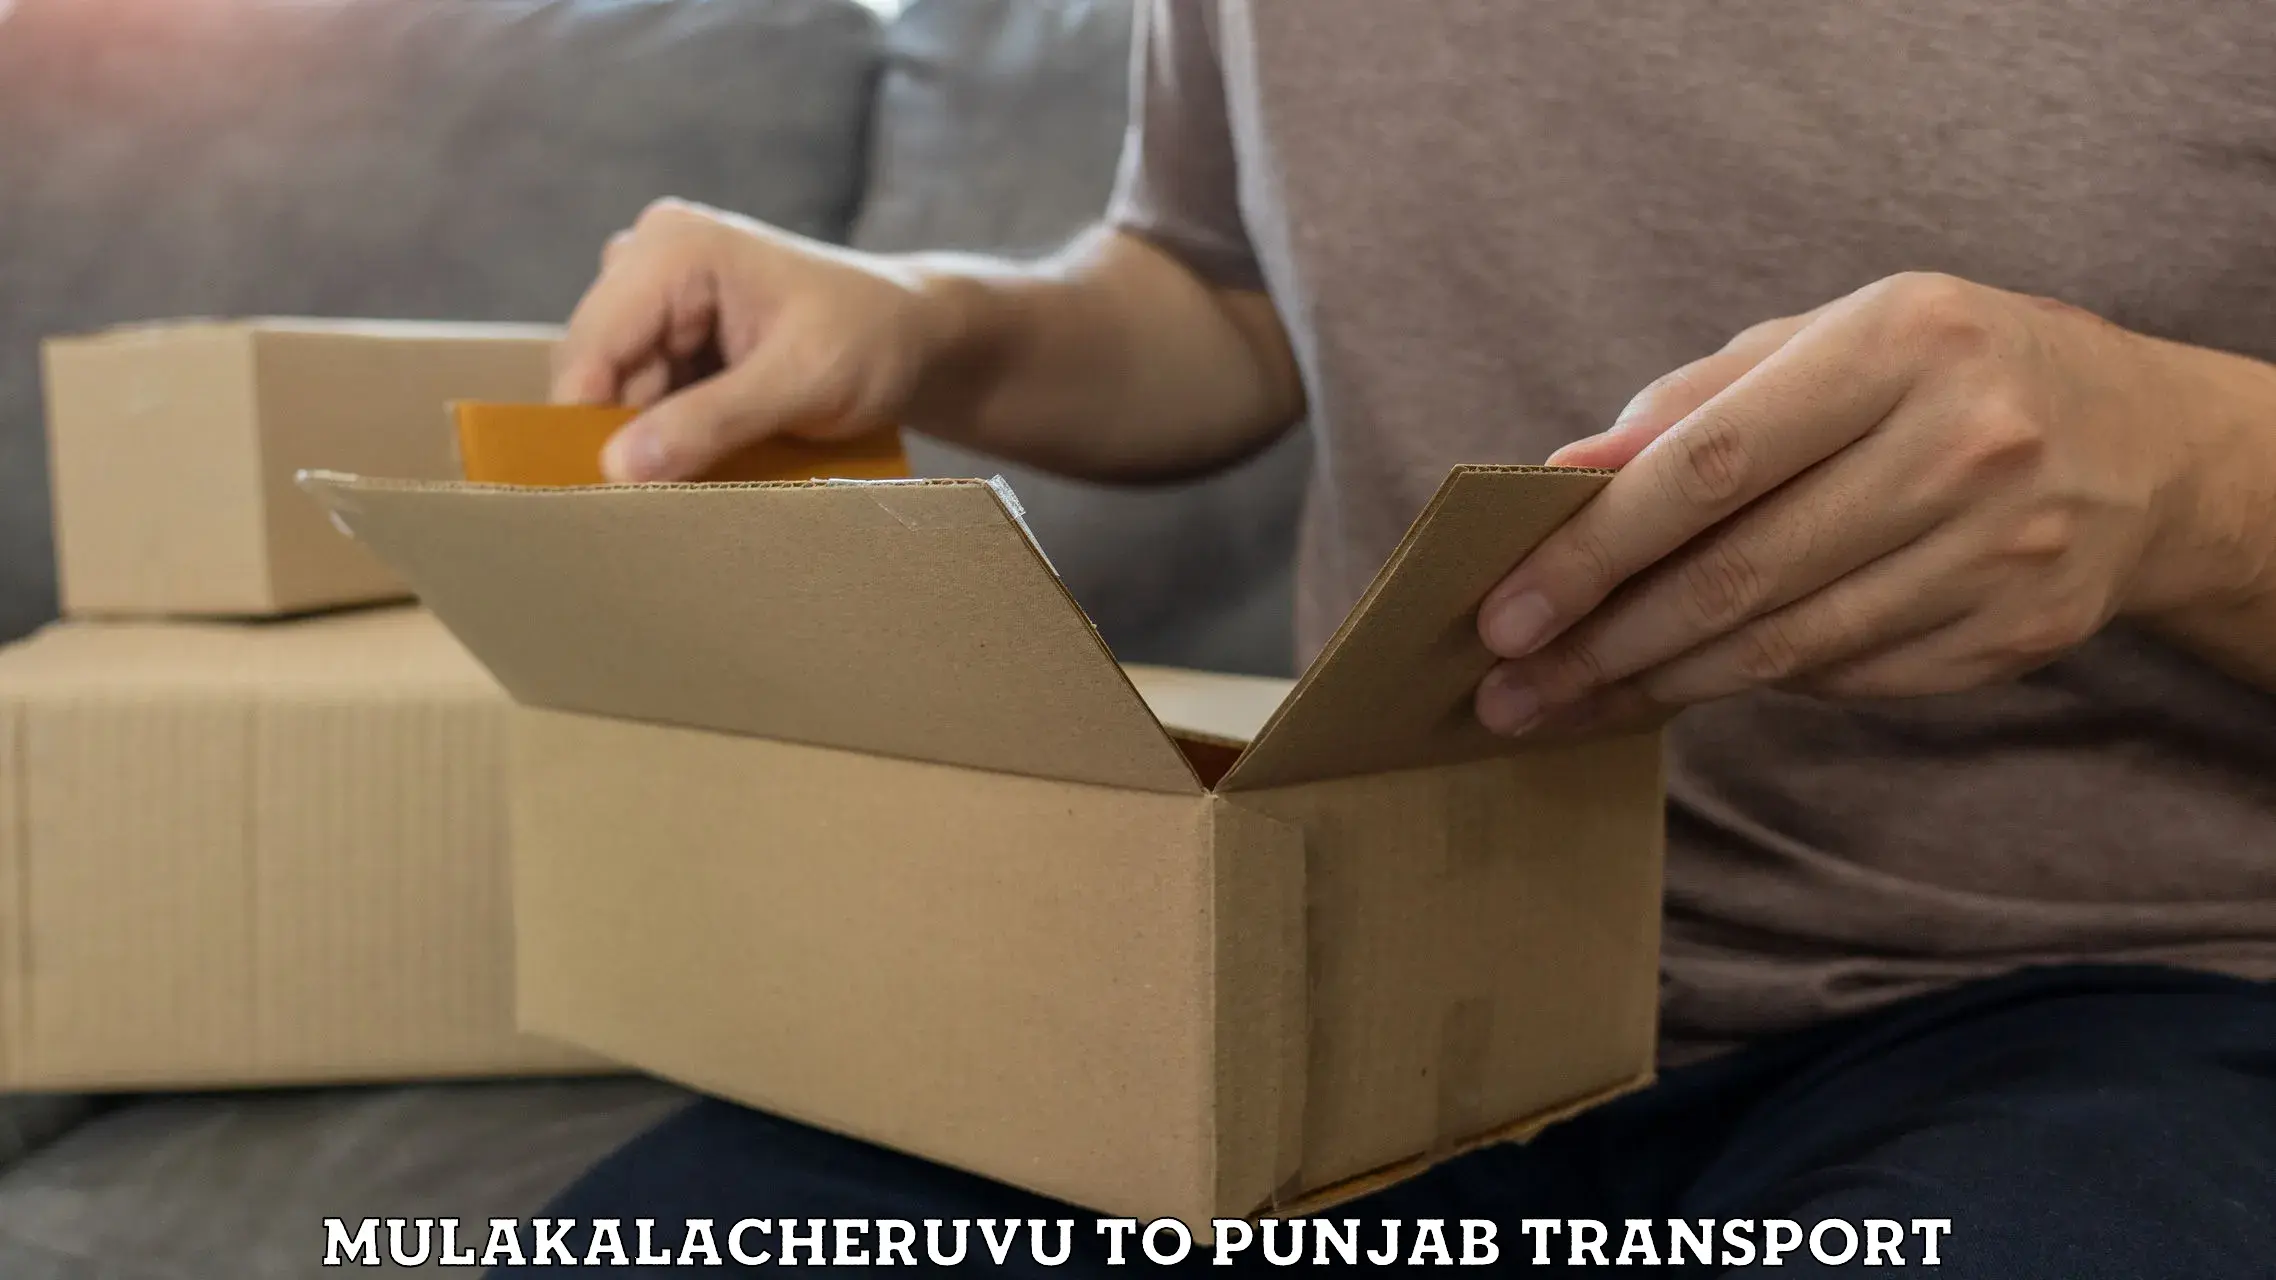 Daily transport service Mulakalacheruvu to Punjab